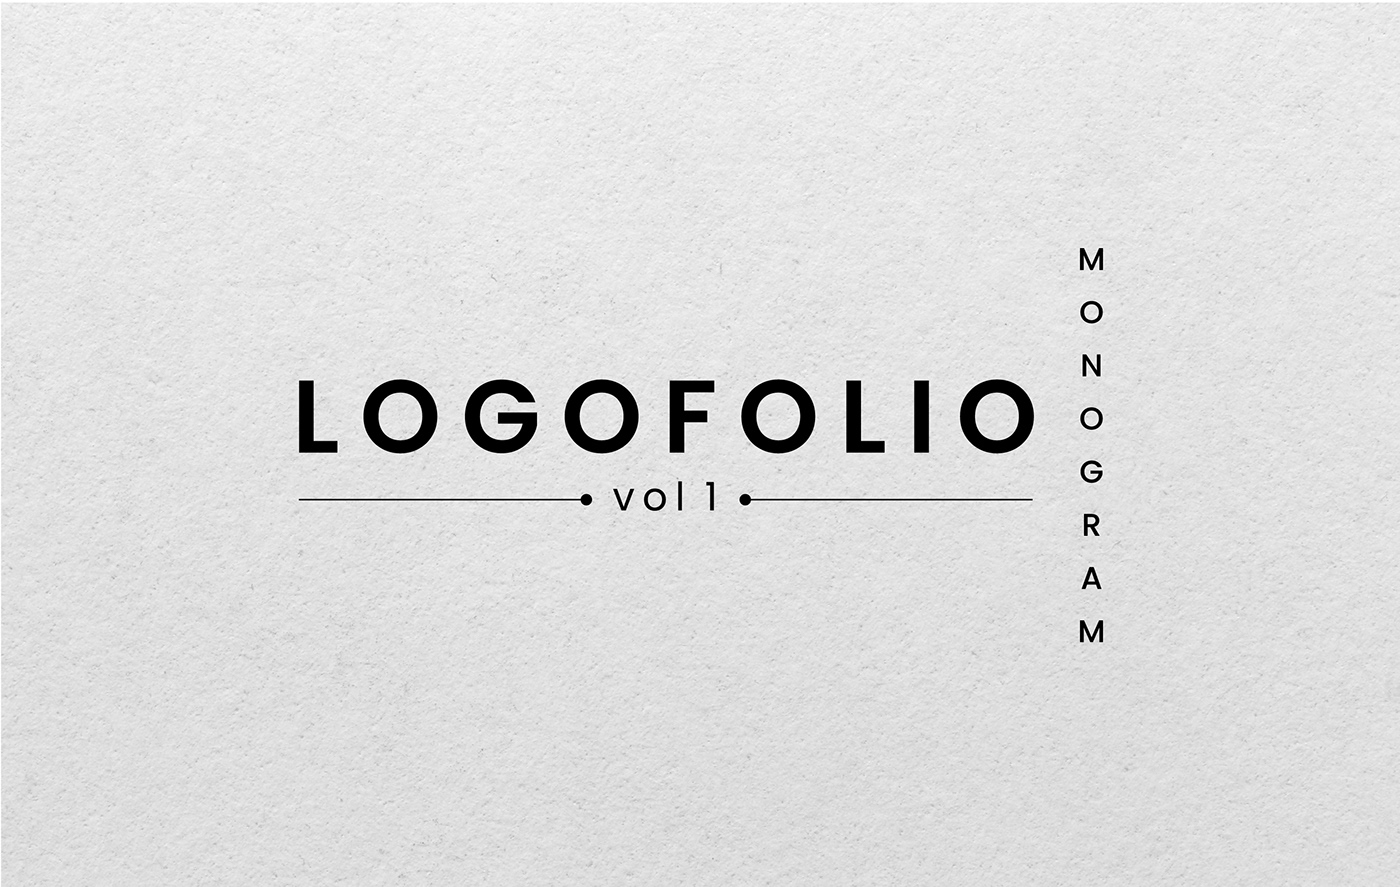 monogram logo initials Logo Design logos Logotype logofolio marks Logotipo Brand Design logo